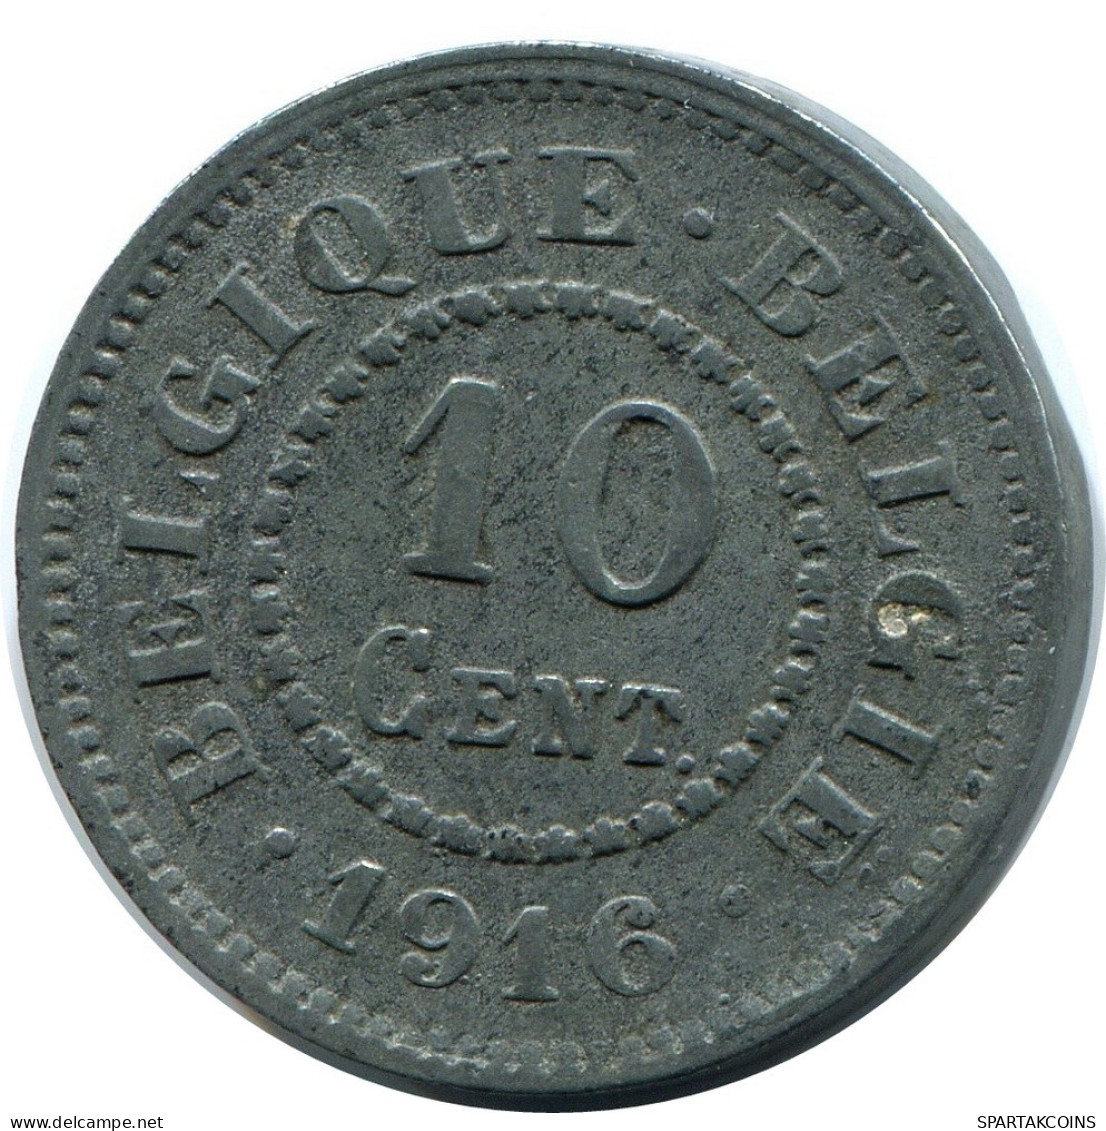 10 CENTIMES 1916 DUTCH Text BELGIUM Coin #BA411.U.A - 10 Centimes